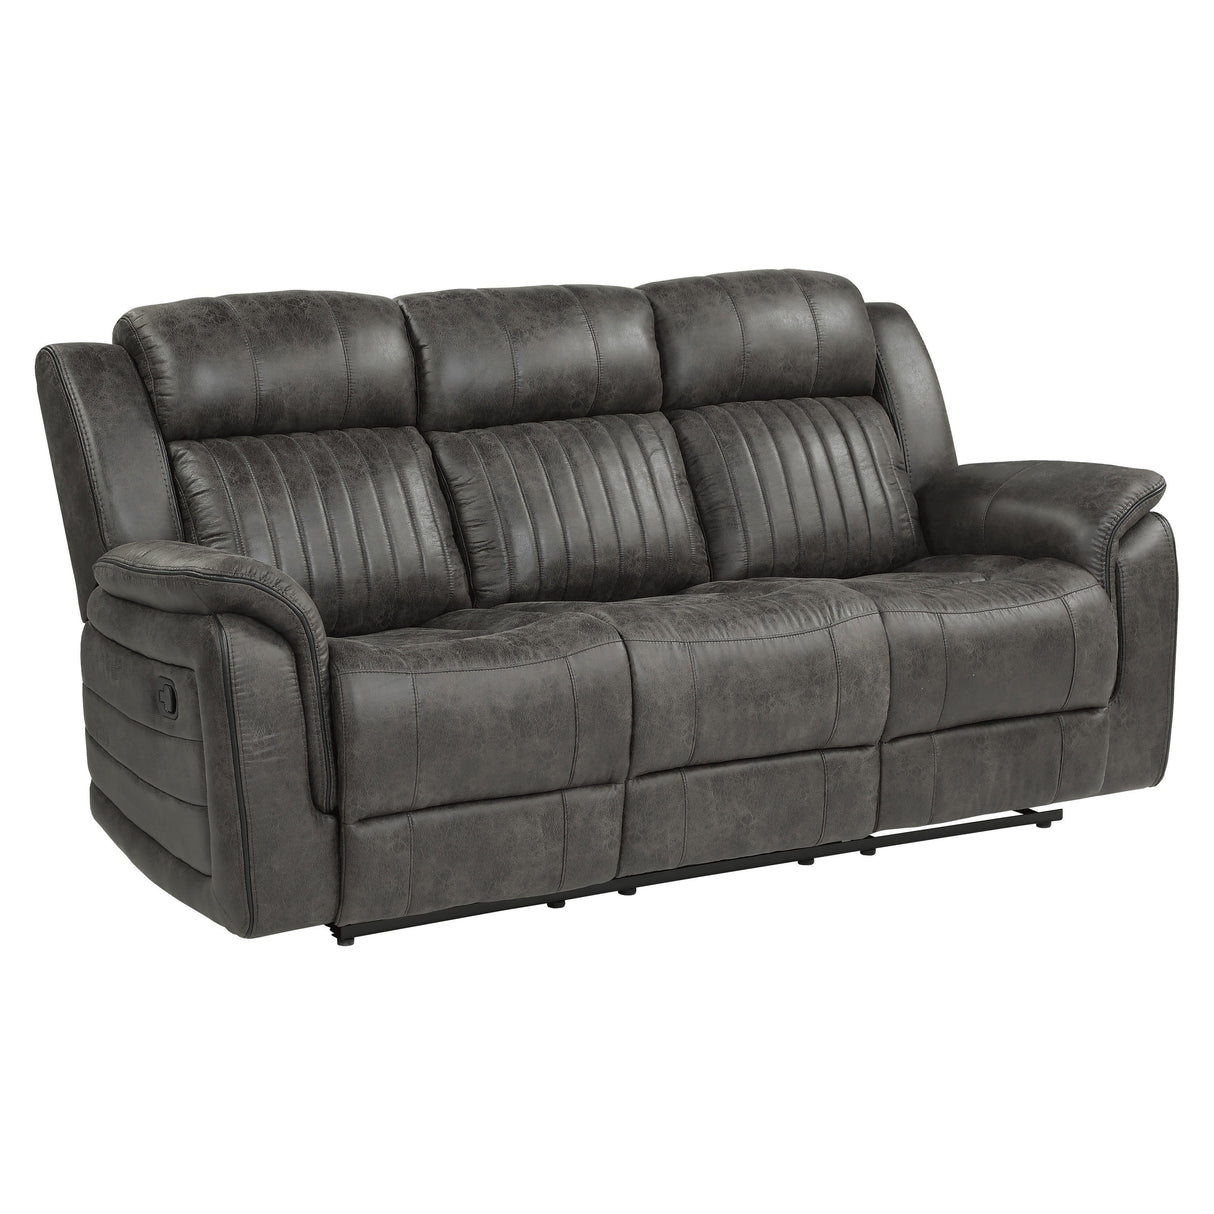 Centeroak Brownish Gray Double Reclining Sofa